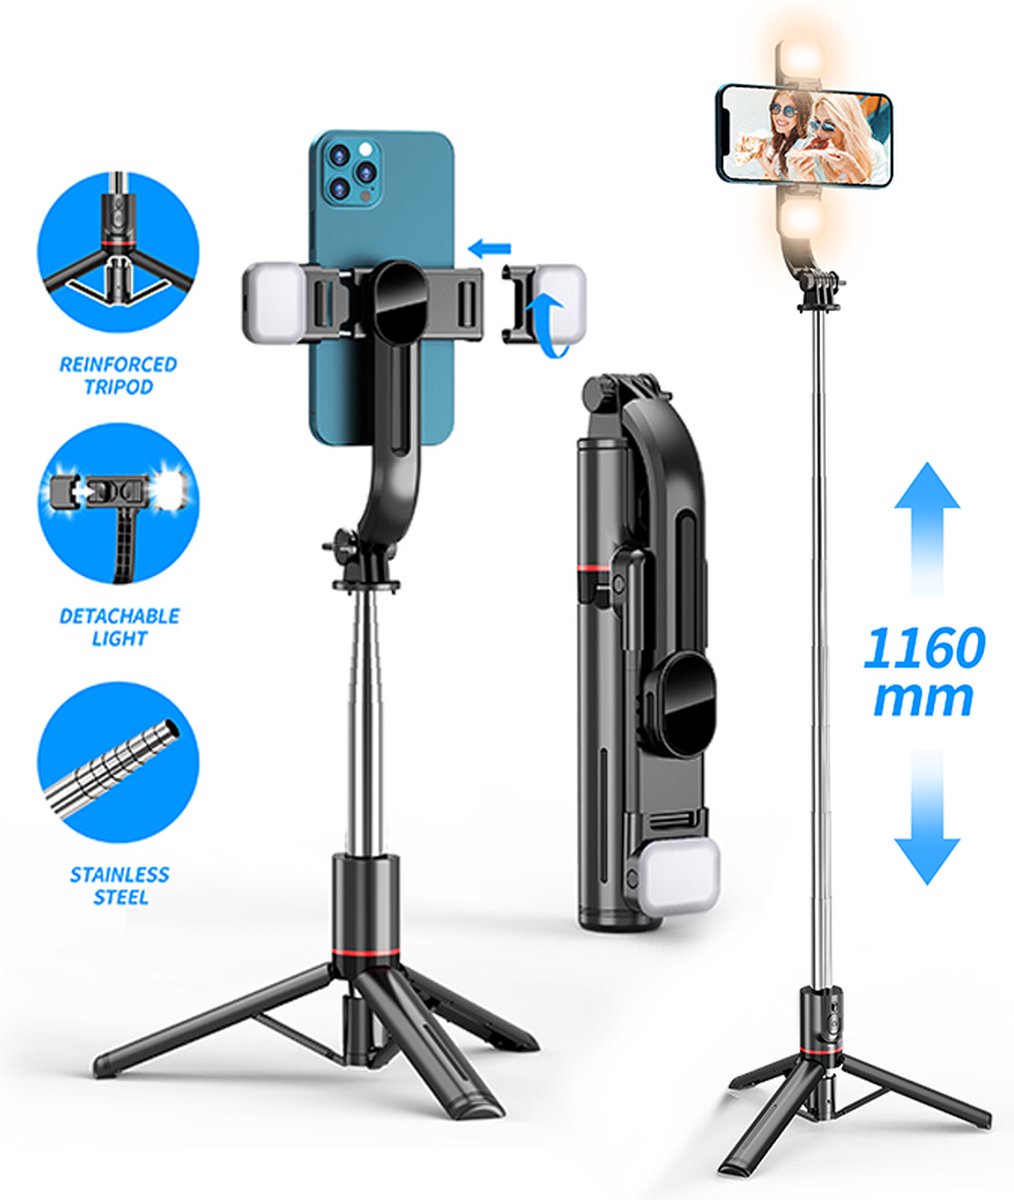 Selfie Stick Tripod - Smartphone Statief - Lichtfunctie LED lamp - Stok - Tripod - 360° Rotatie - Bluetooth Afstandsbediening - Lange Batterijduur - iPhone - Samsung - Selfiestick Universeel